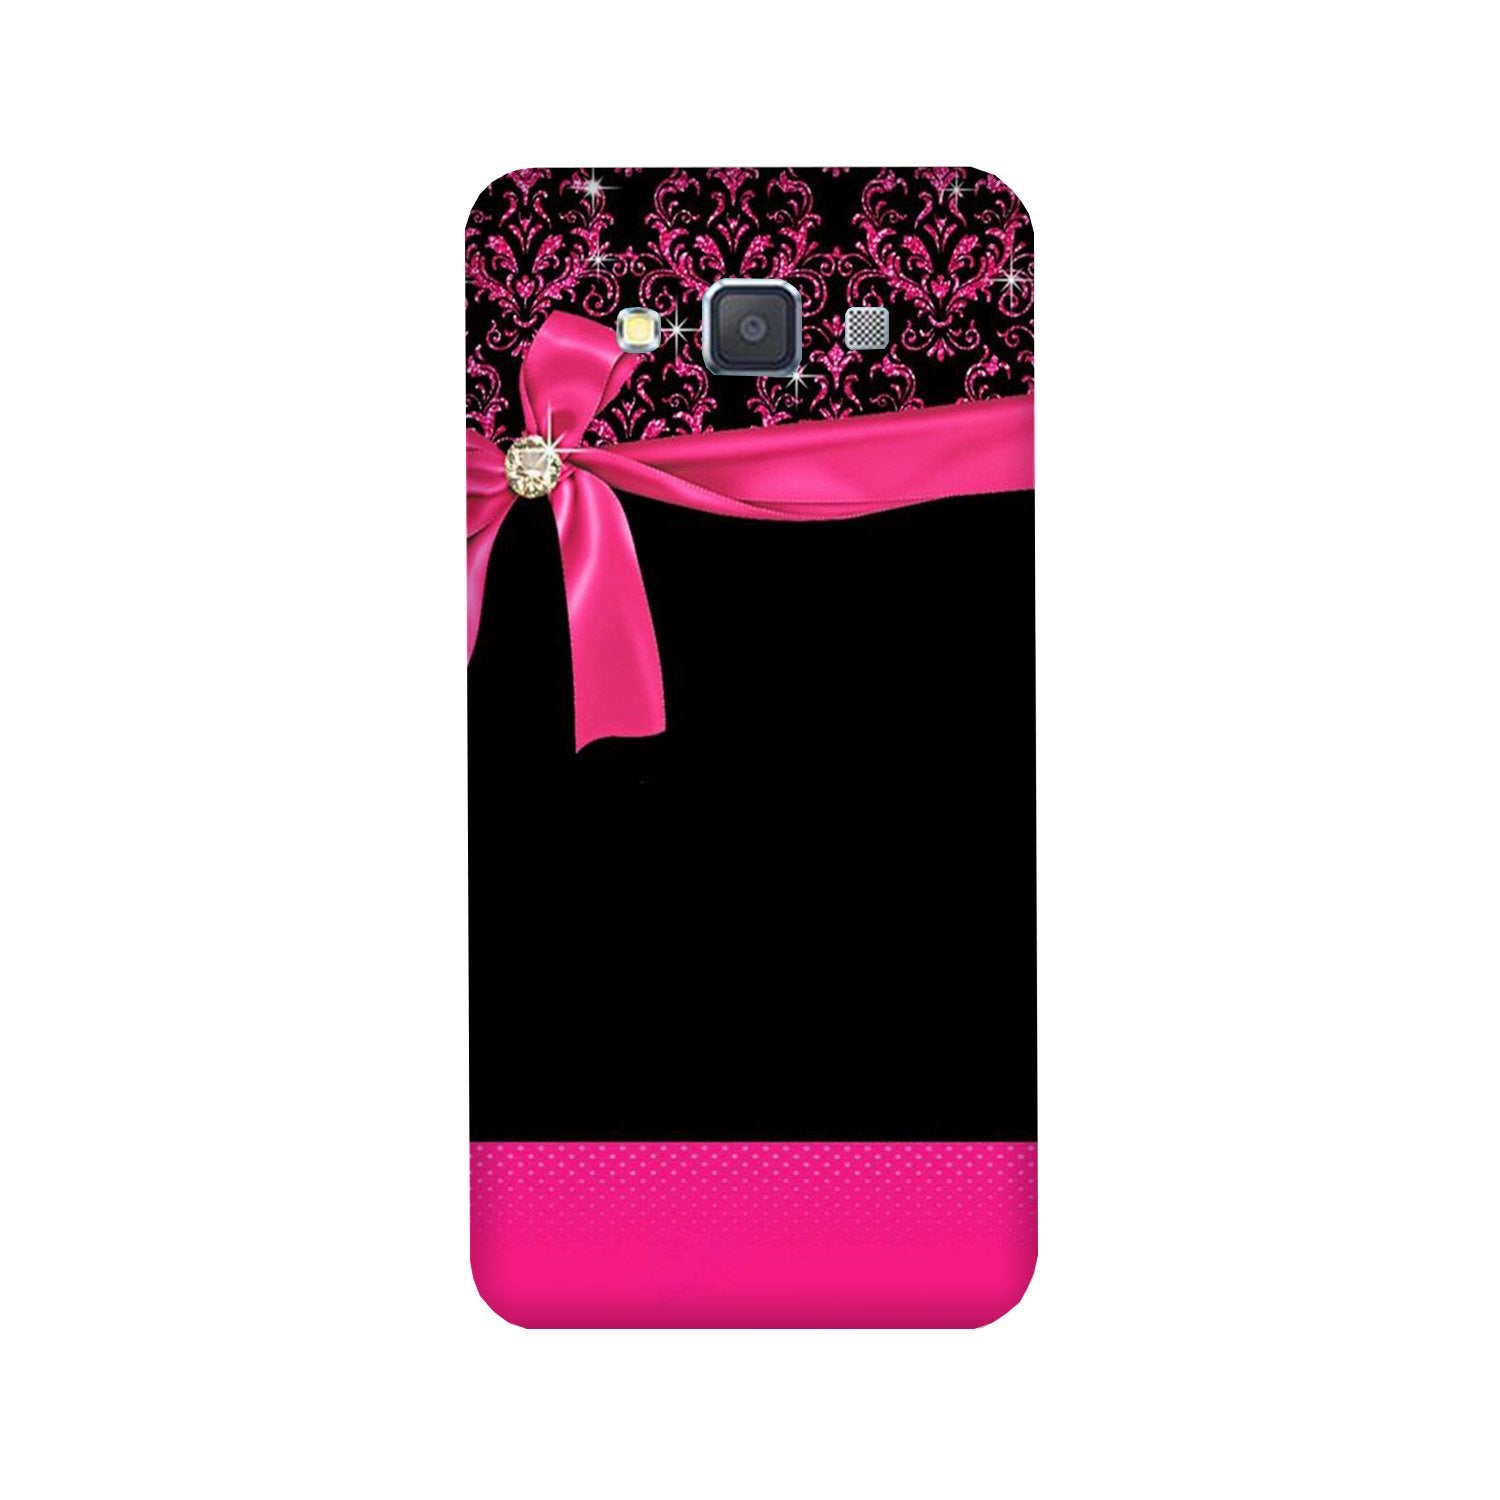 Gift Wrap4 Case for Galaxy E7